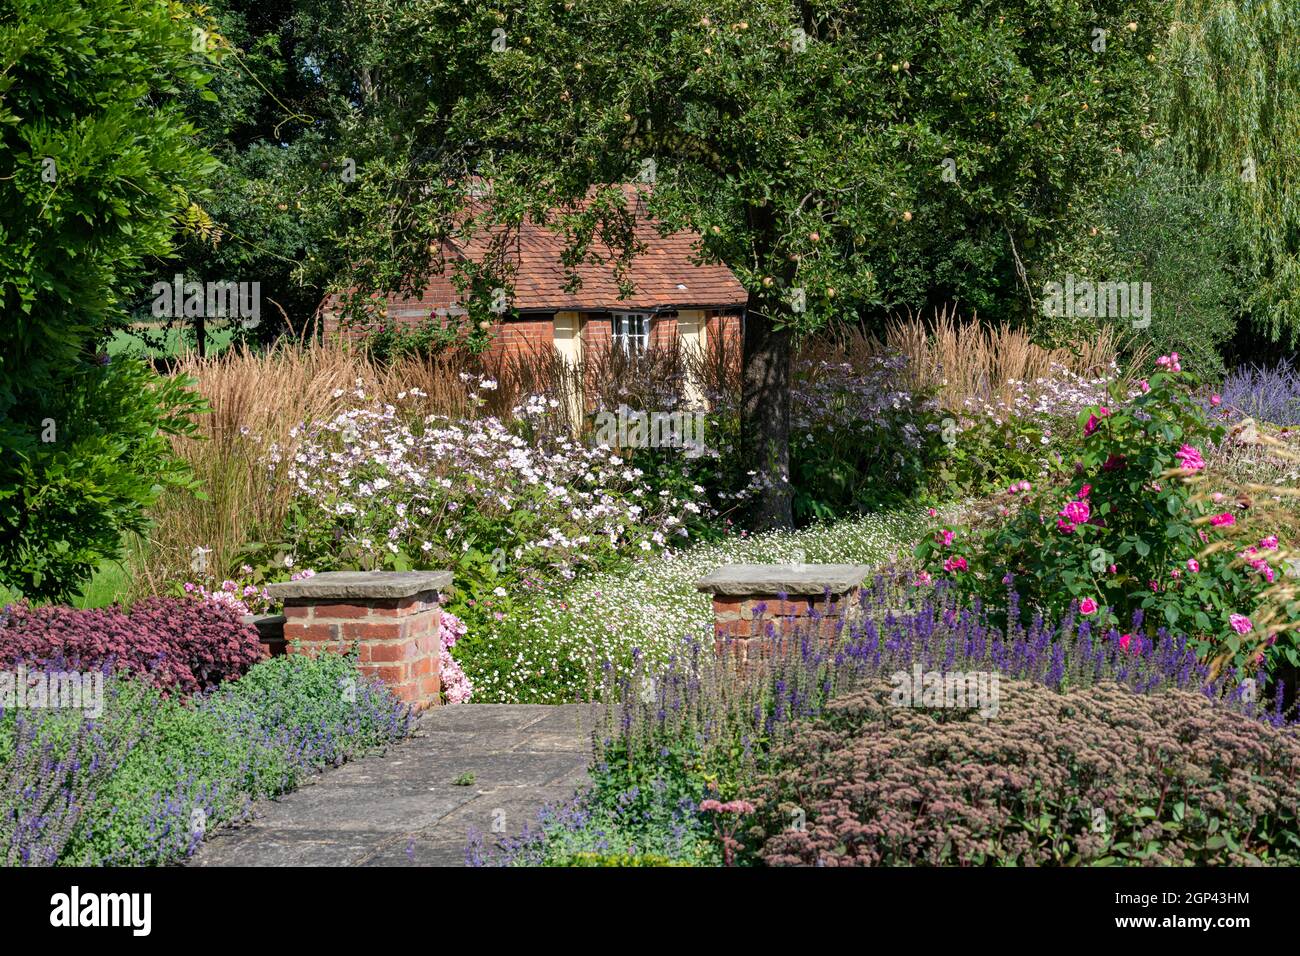 Ambiance estivale paisible d'un jardin de campagne anglais Banque D'Images